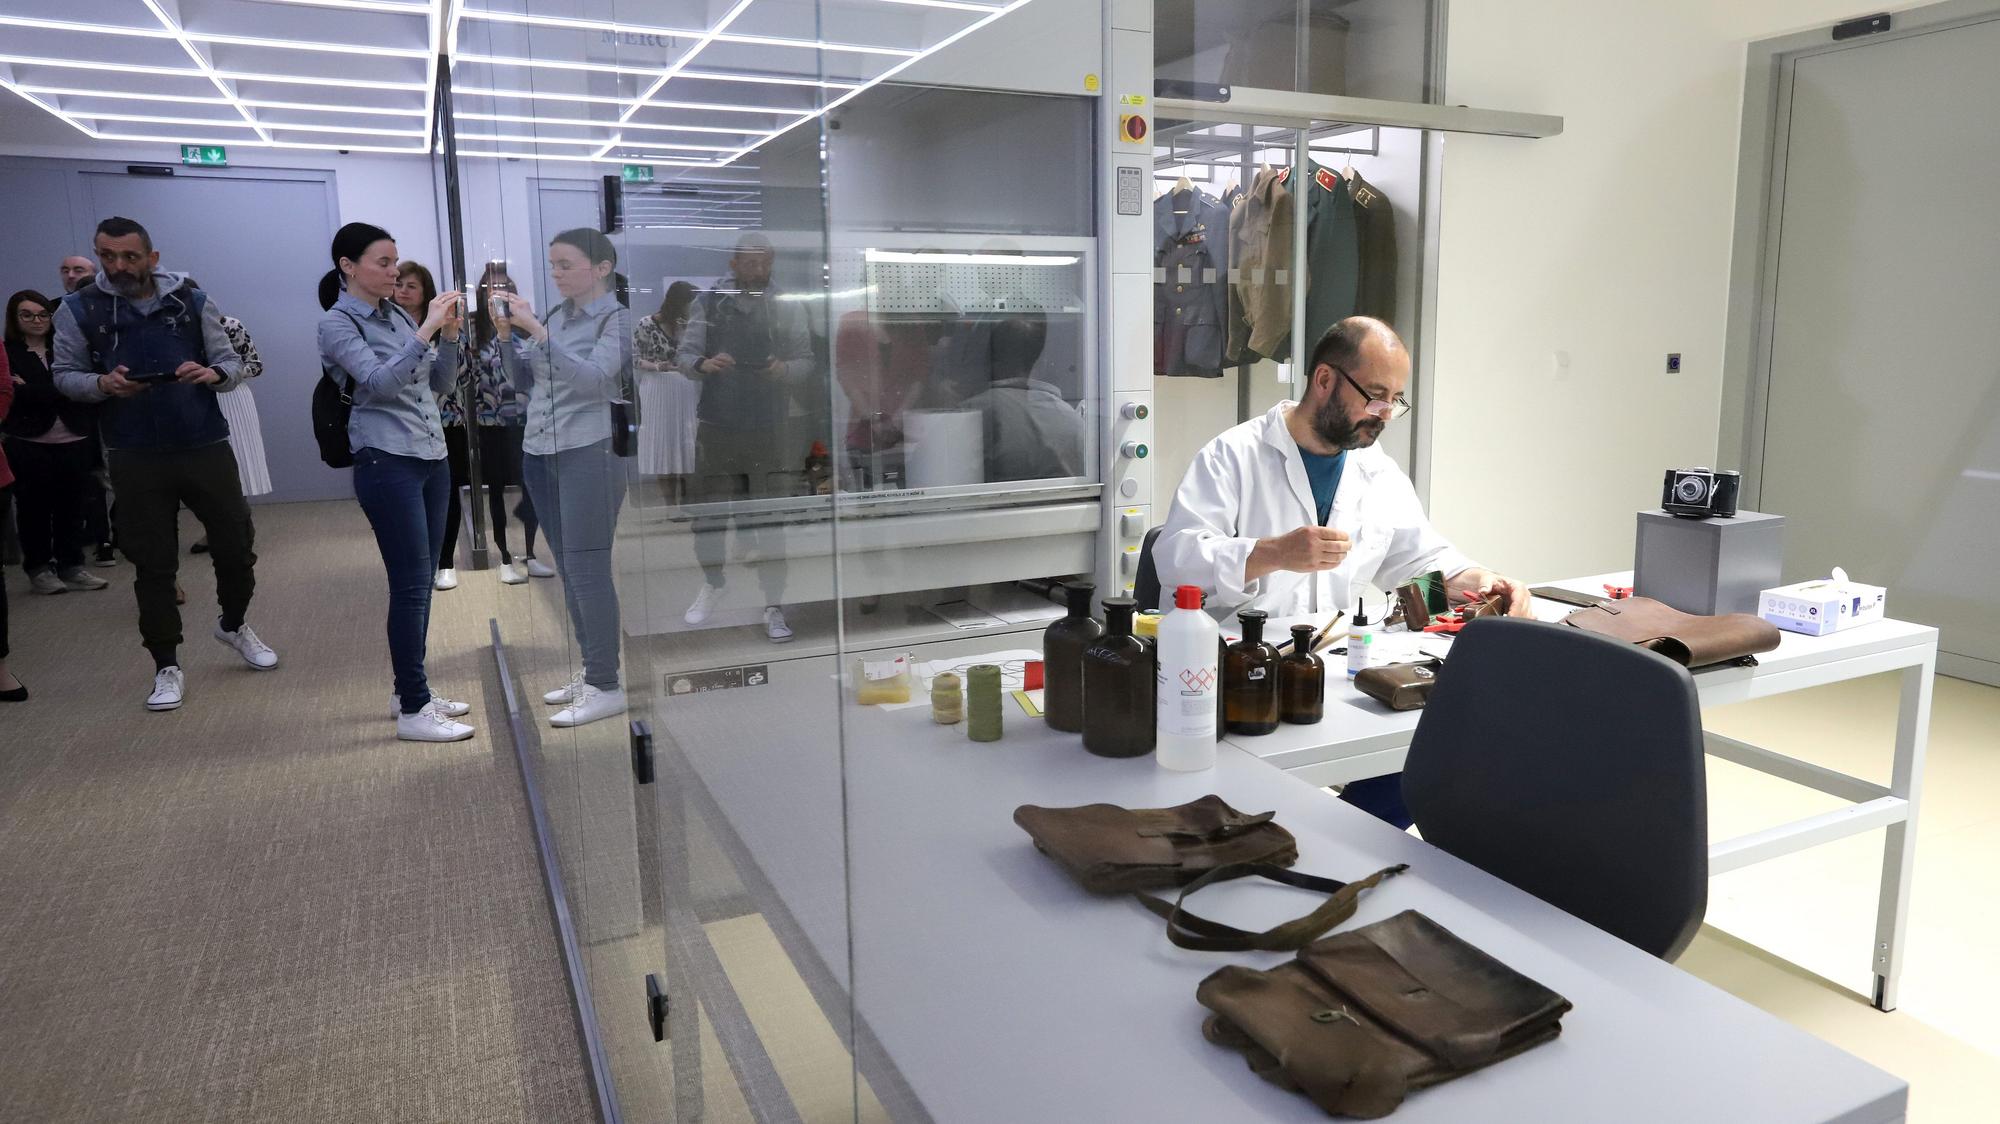 Otvorený depozitár v Múzeu SNP. Návštevníci v ňom môžu vidieť doteraz nevystavené vzácne zbierkové predmety aj prácu konzervátorov.